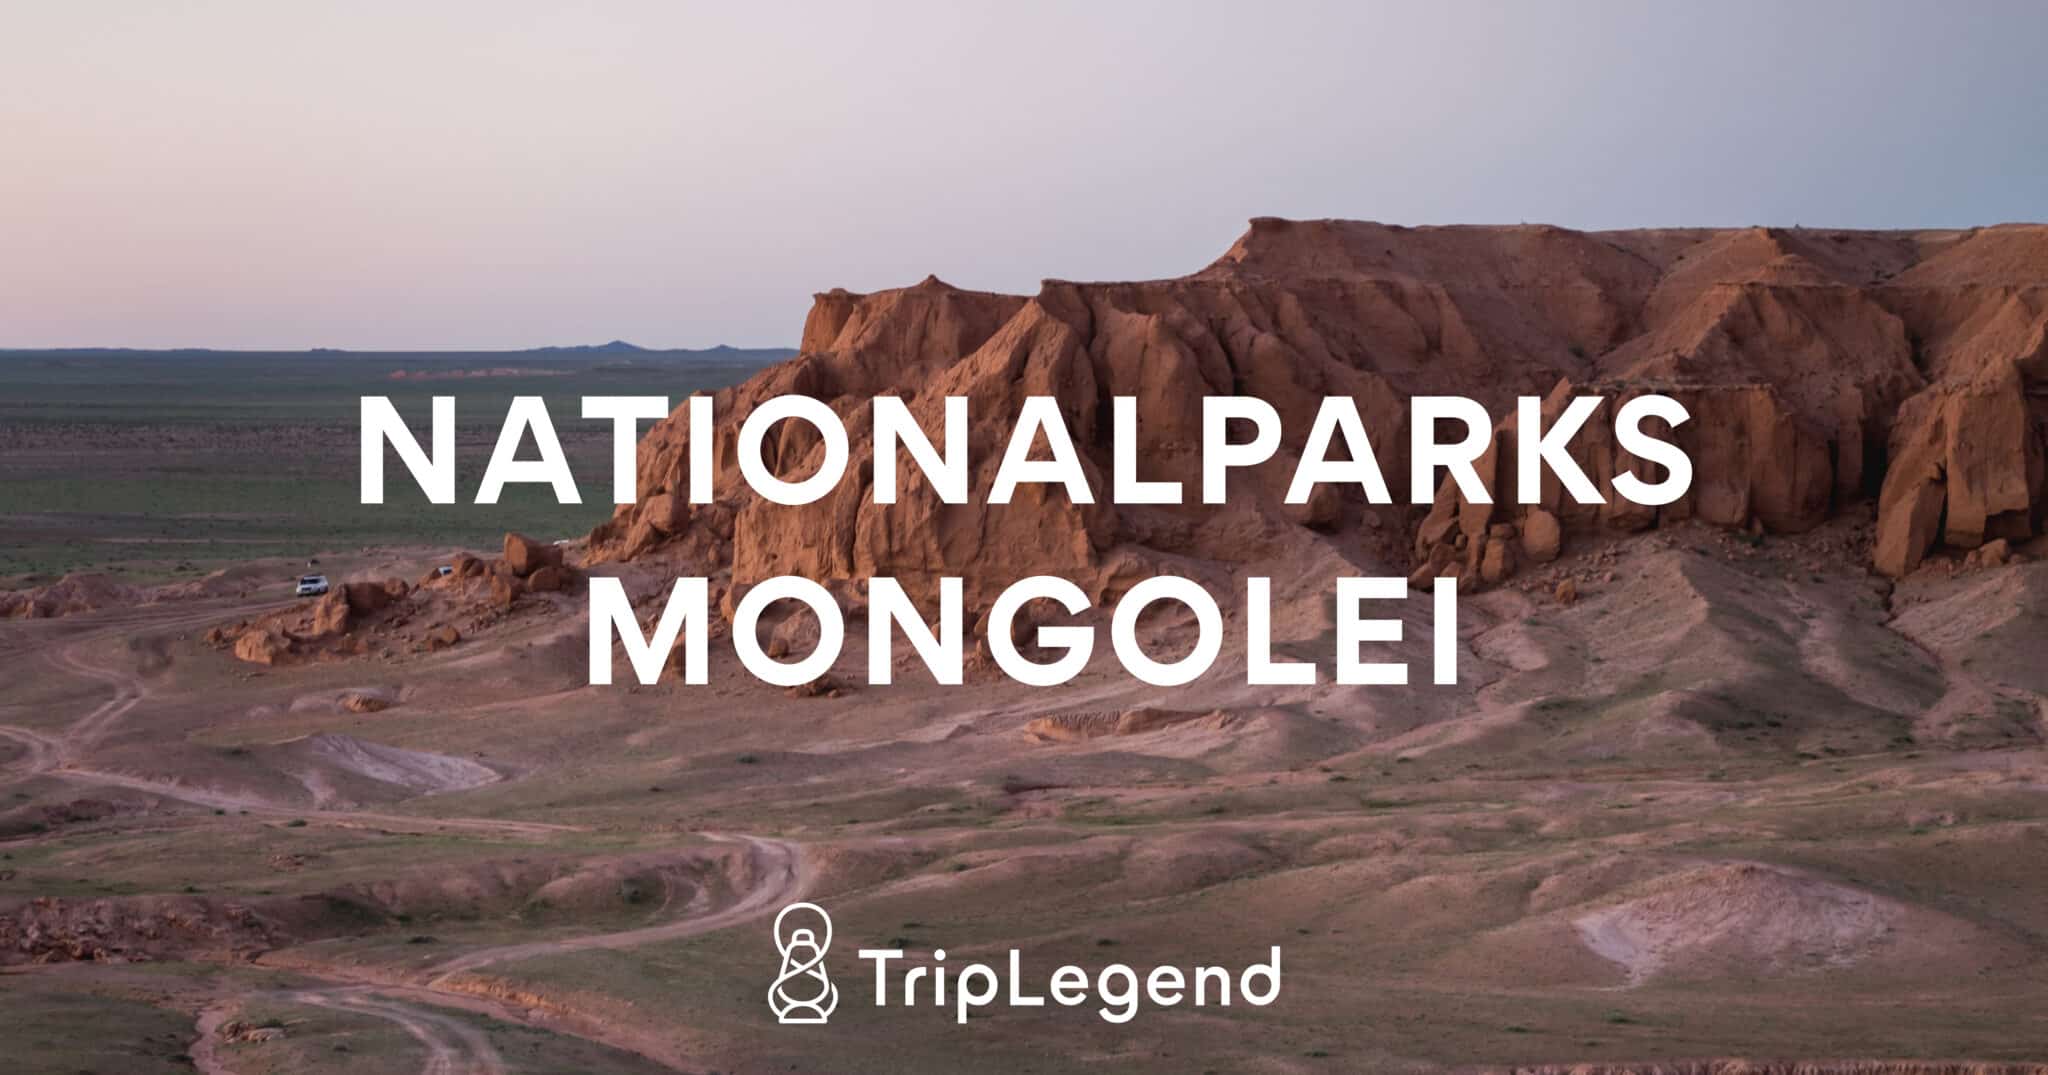 Billede til artiklen om Mongoliets nationalparker